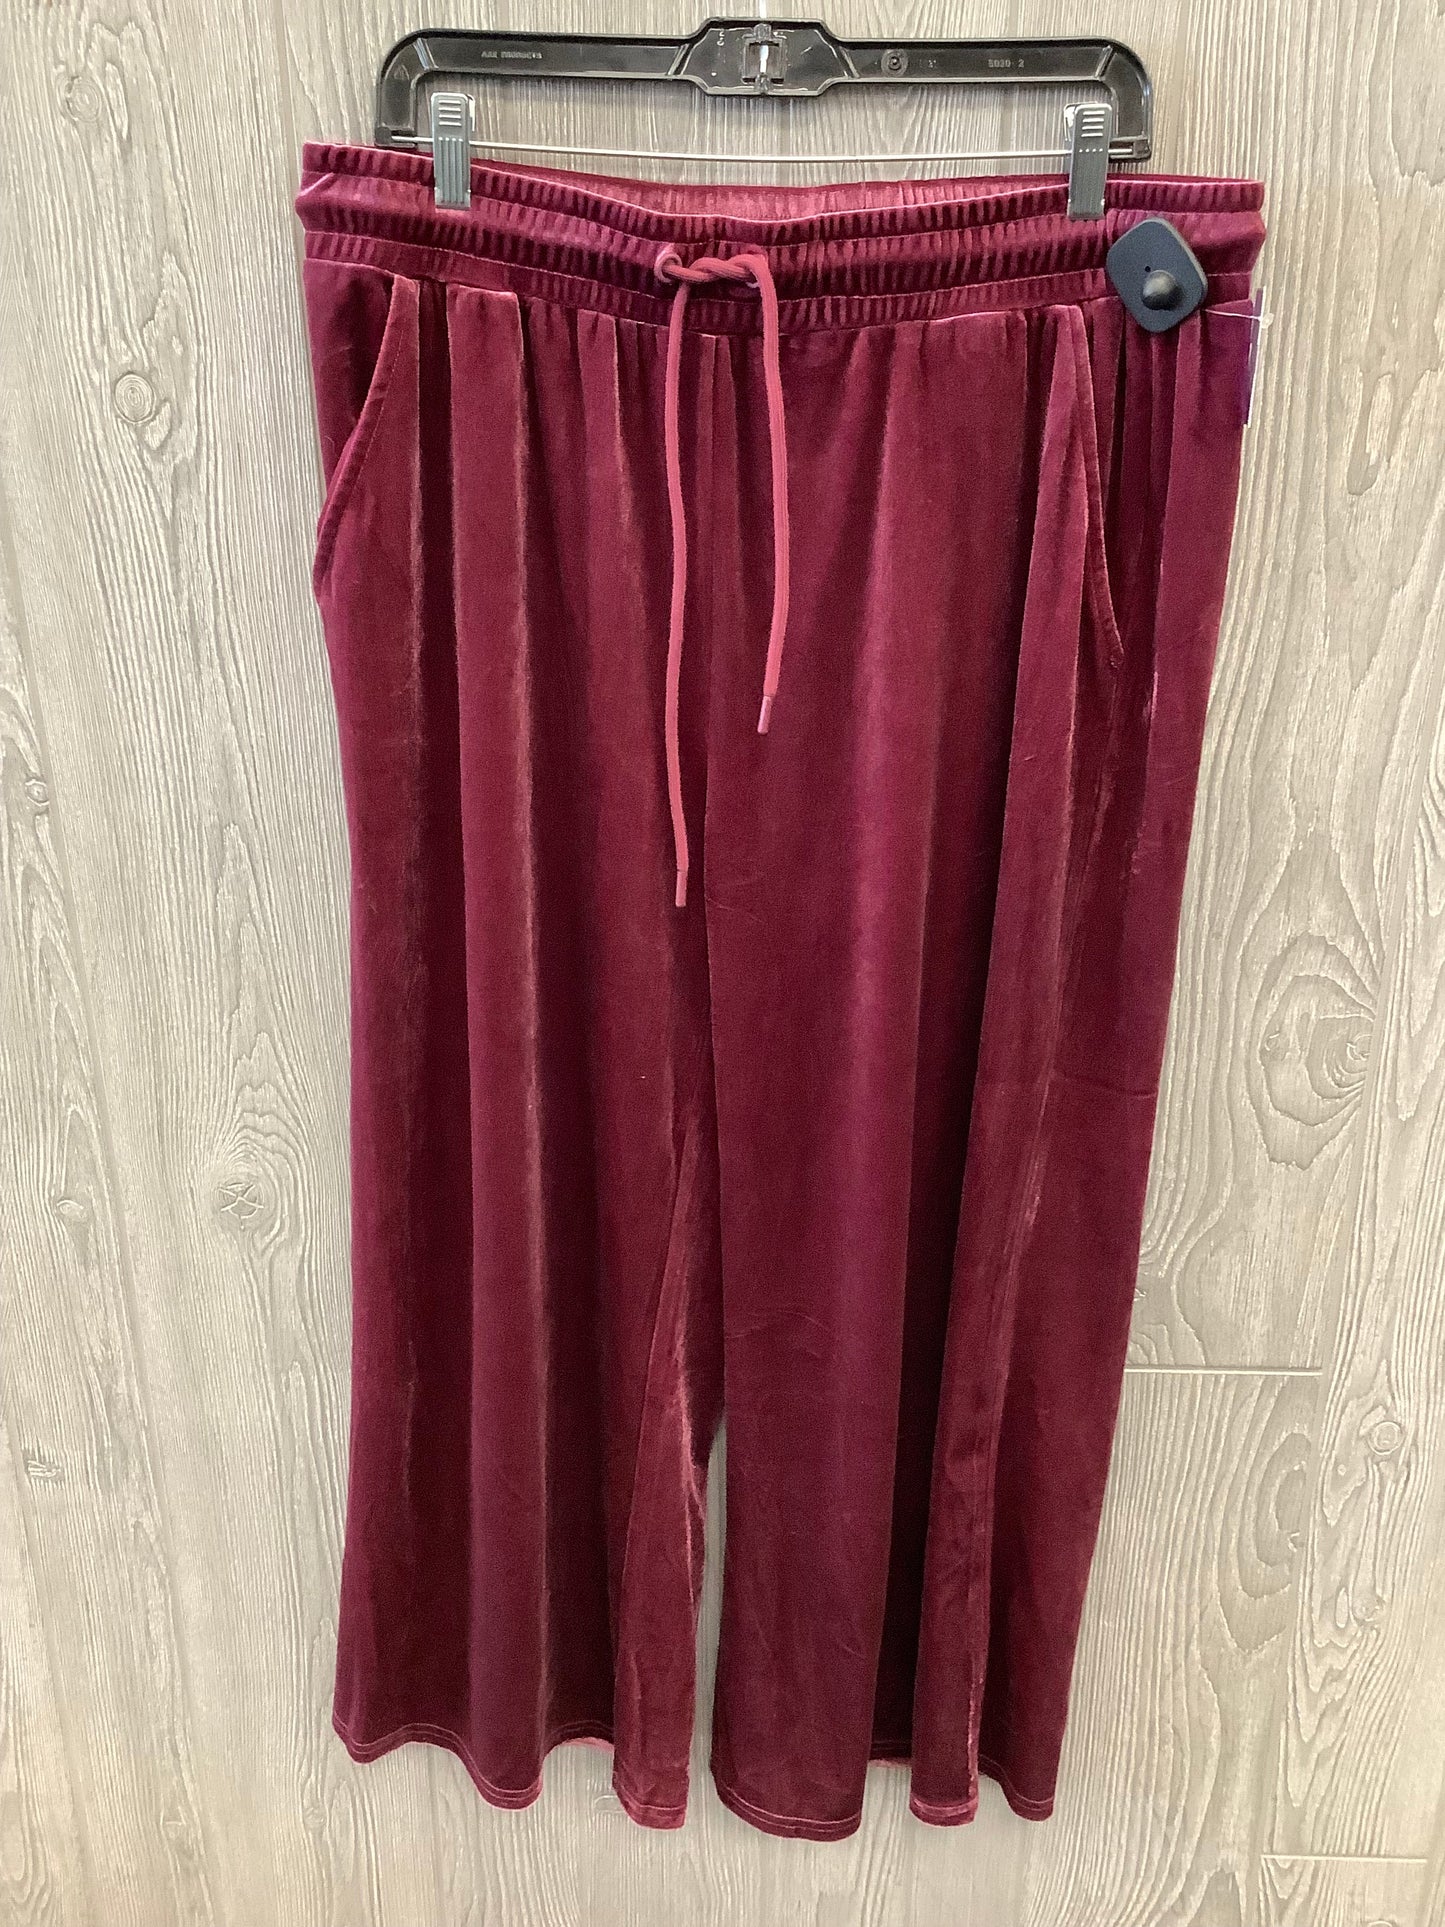 Purple Pants Lounge Clothes Mentor, Size 2x